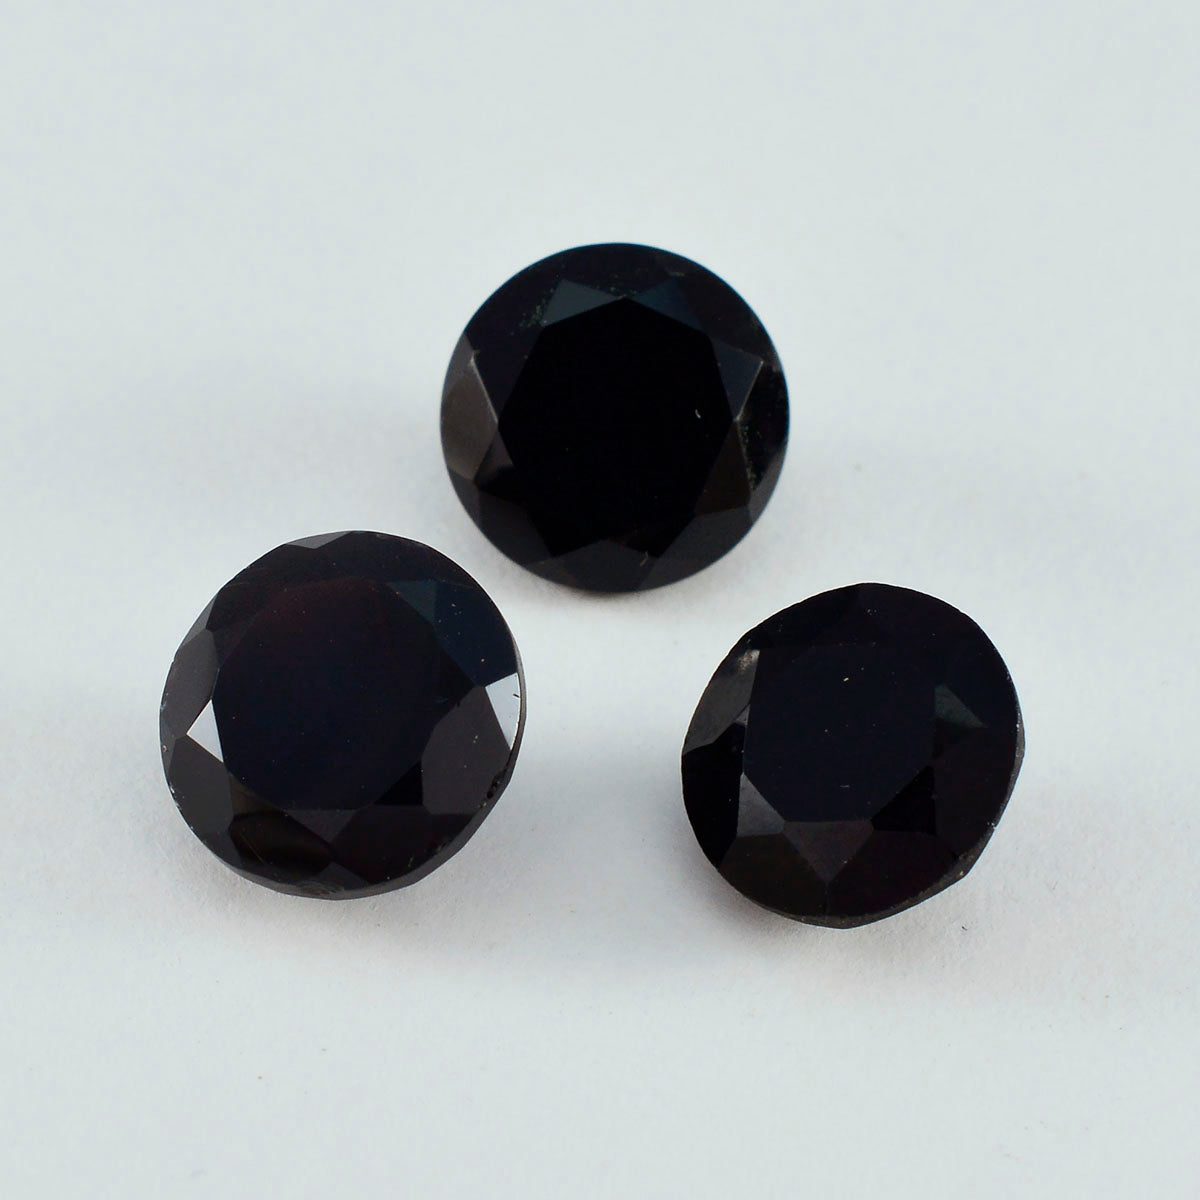 Riyogems 1PC Genuine Black Onyx Faceted 12x12 mm Round Shape astonishing Quality Loose Gemstone